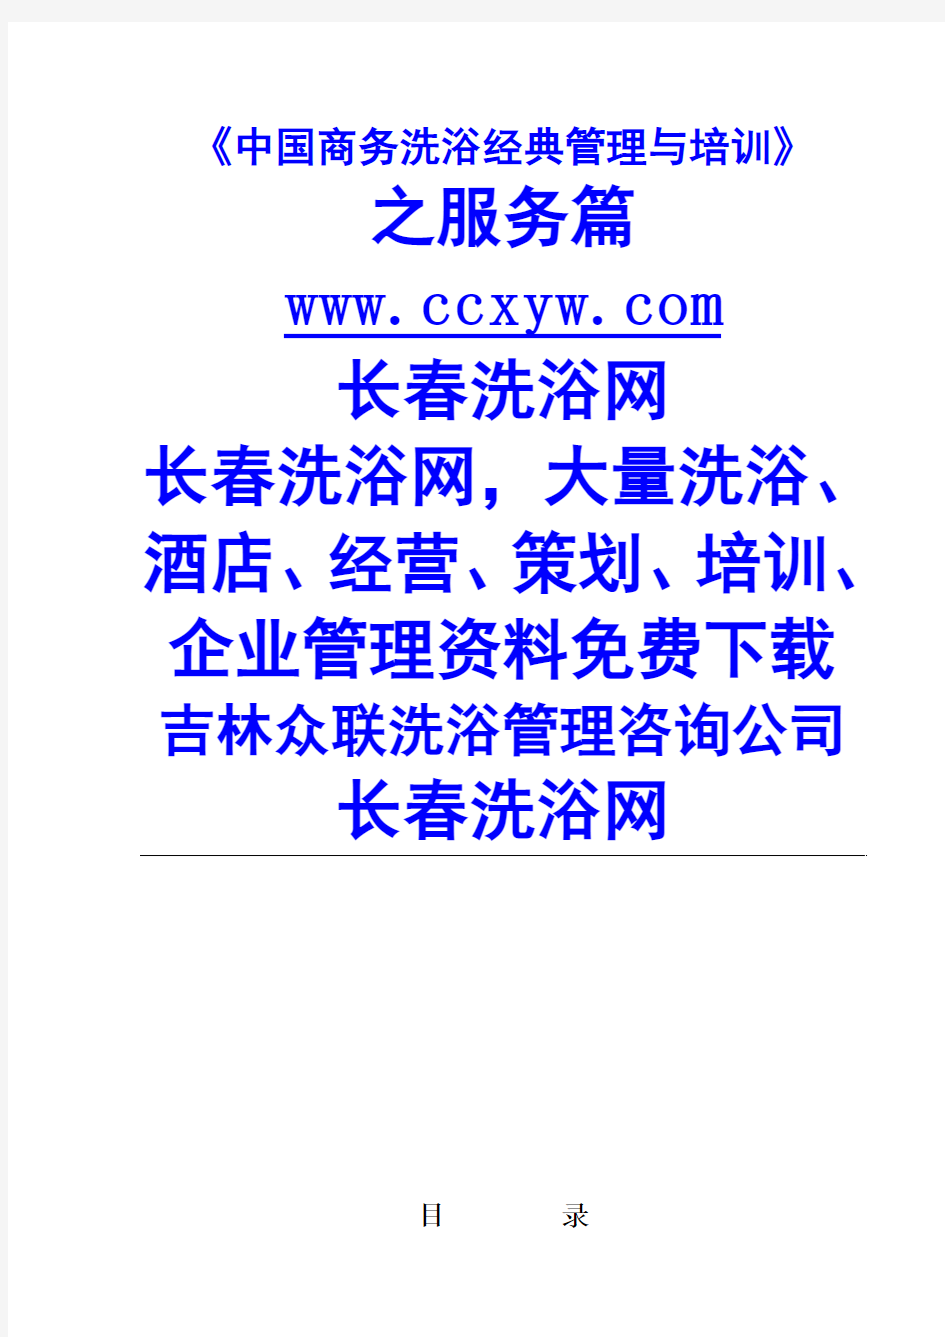 中国商务洗浴经典管理与培训--服务课(100p)